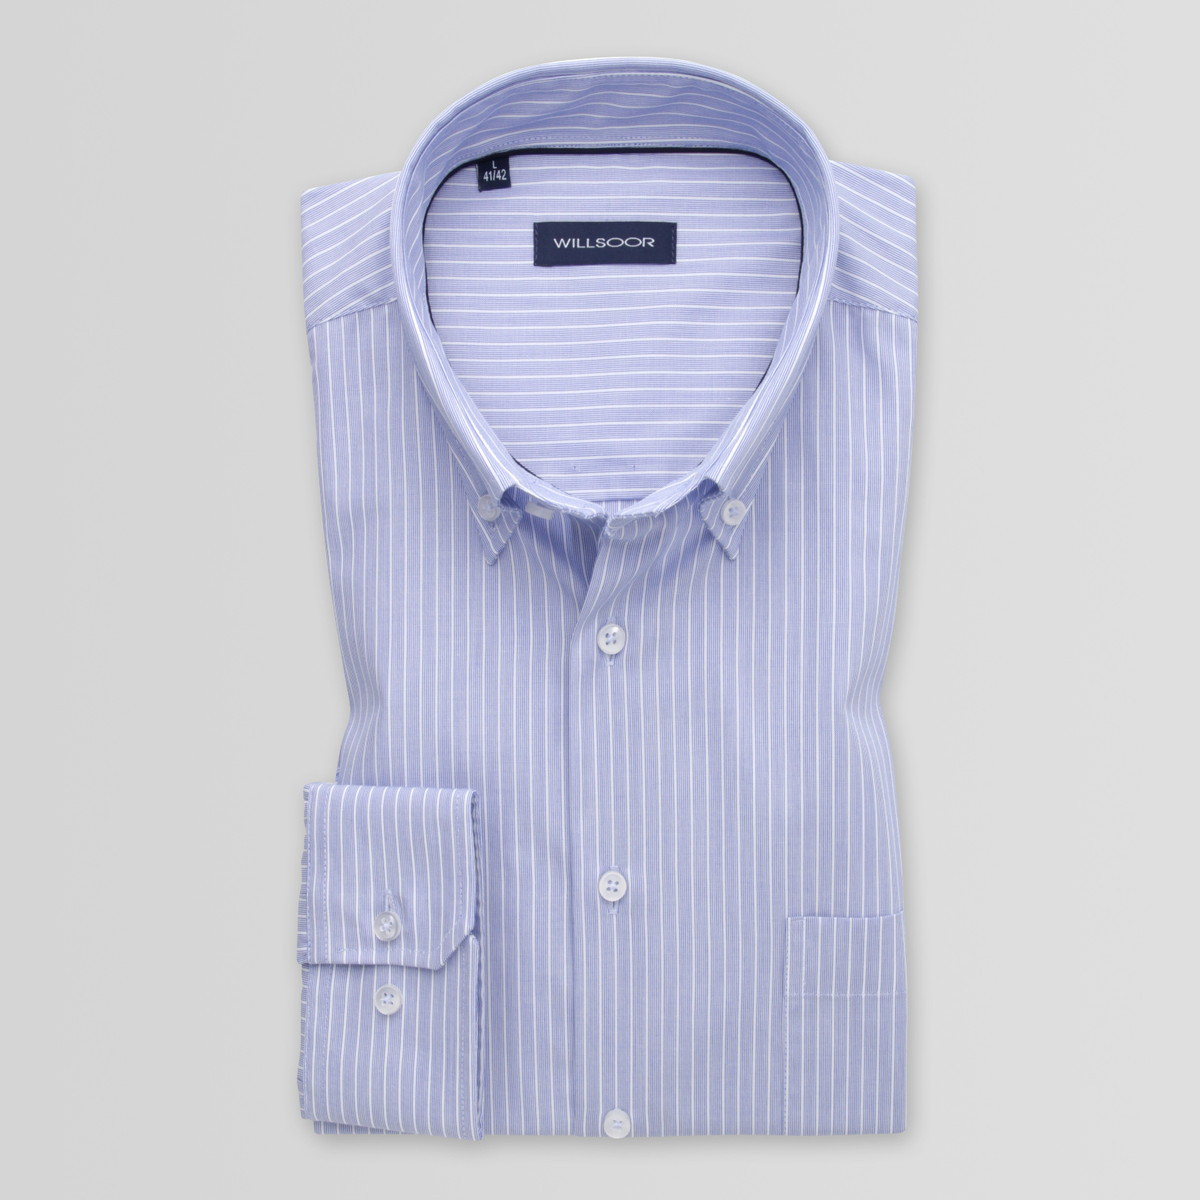 Jasnobłękitna klasyczna koszula w paski i prążki